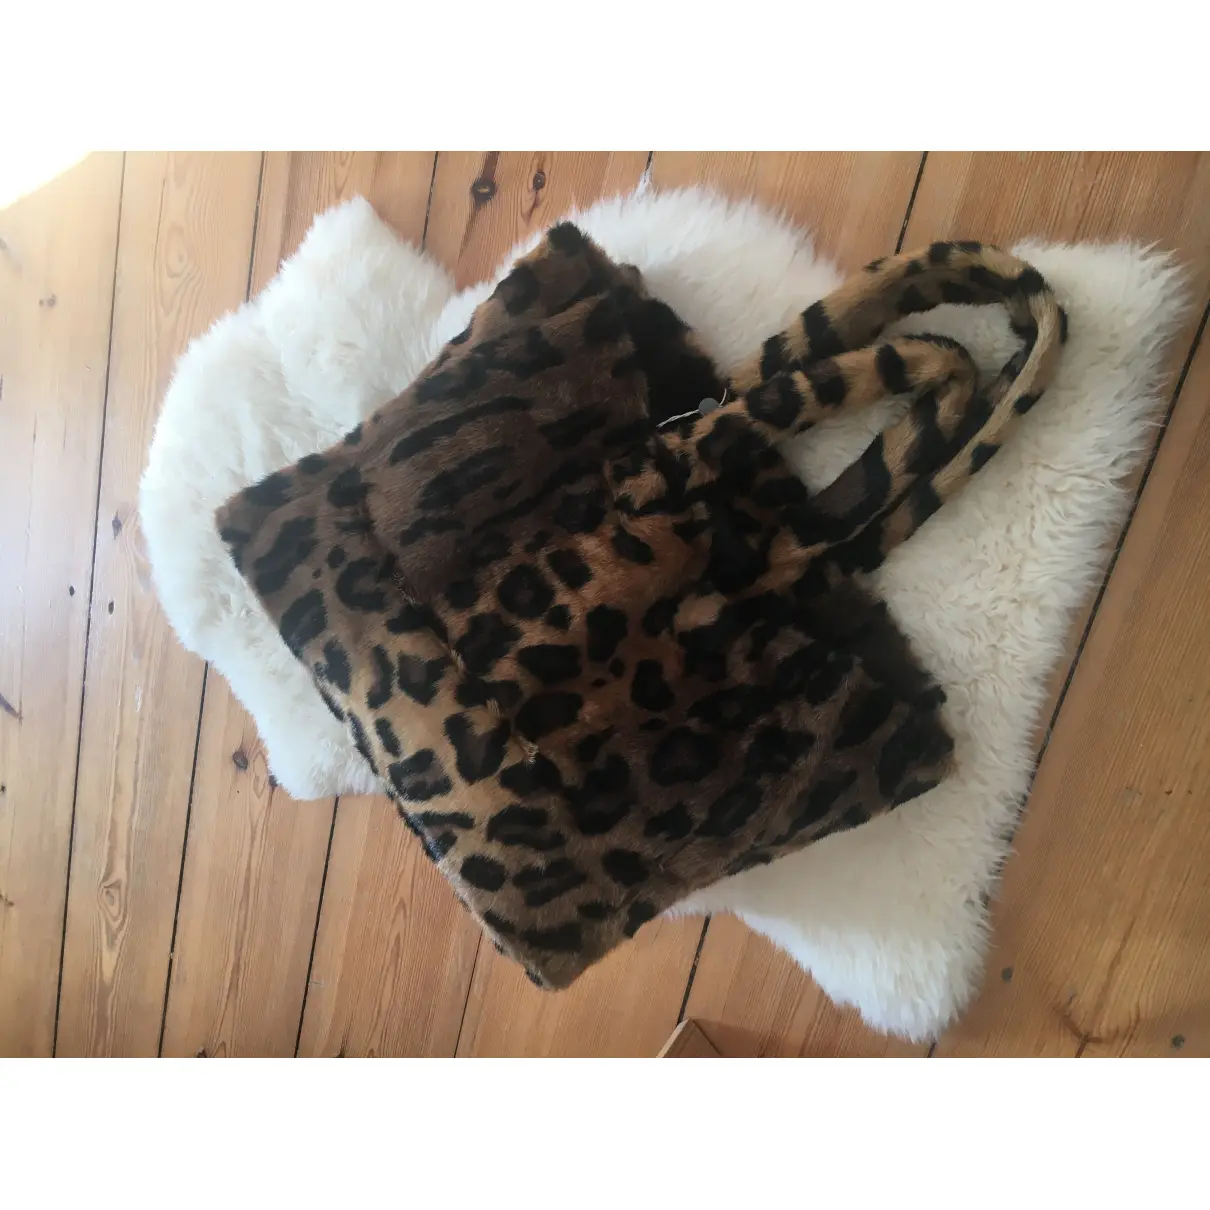 Buy Stand studio Faux fur handbag online